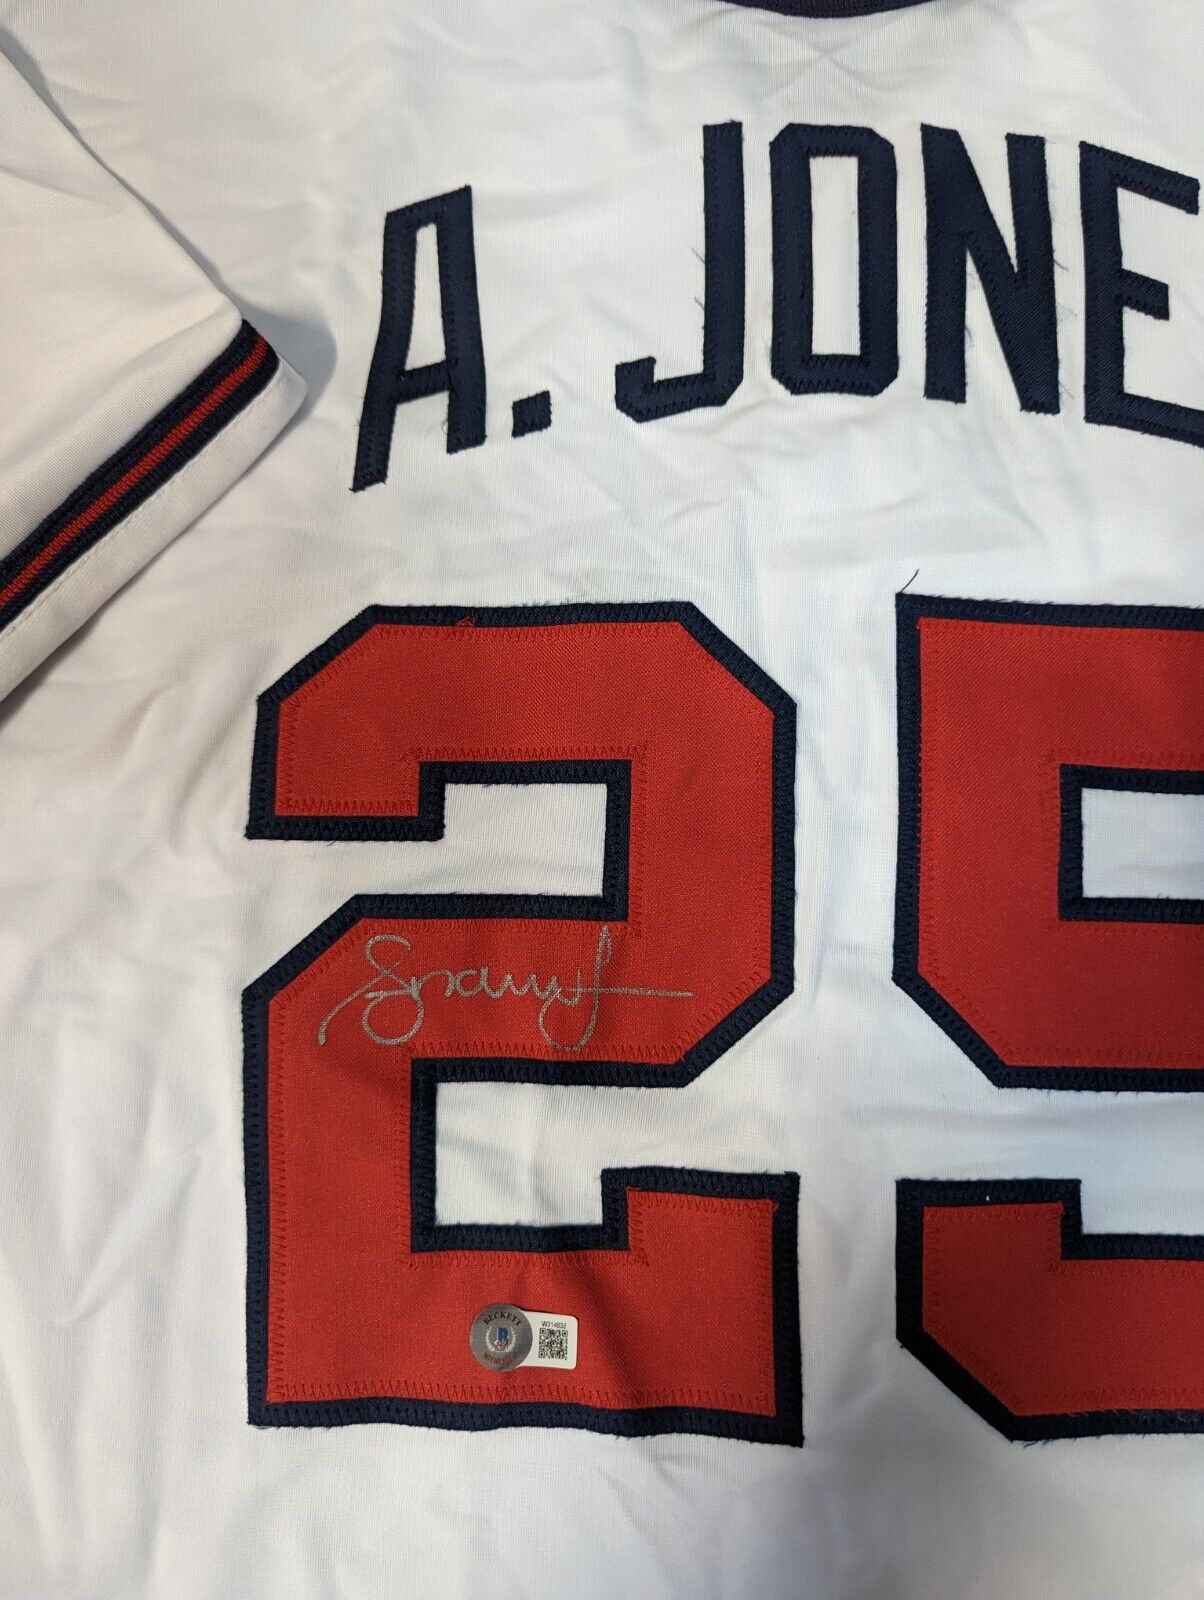 Andruw Jones Autographed Memorabilia